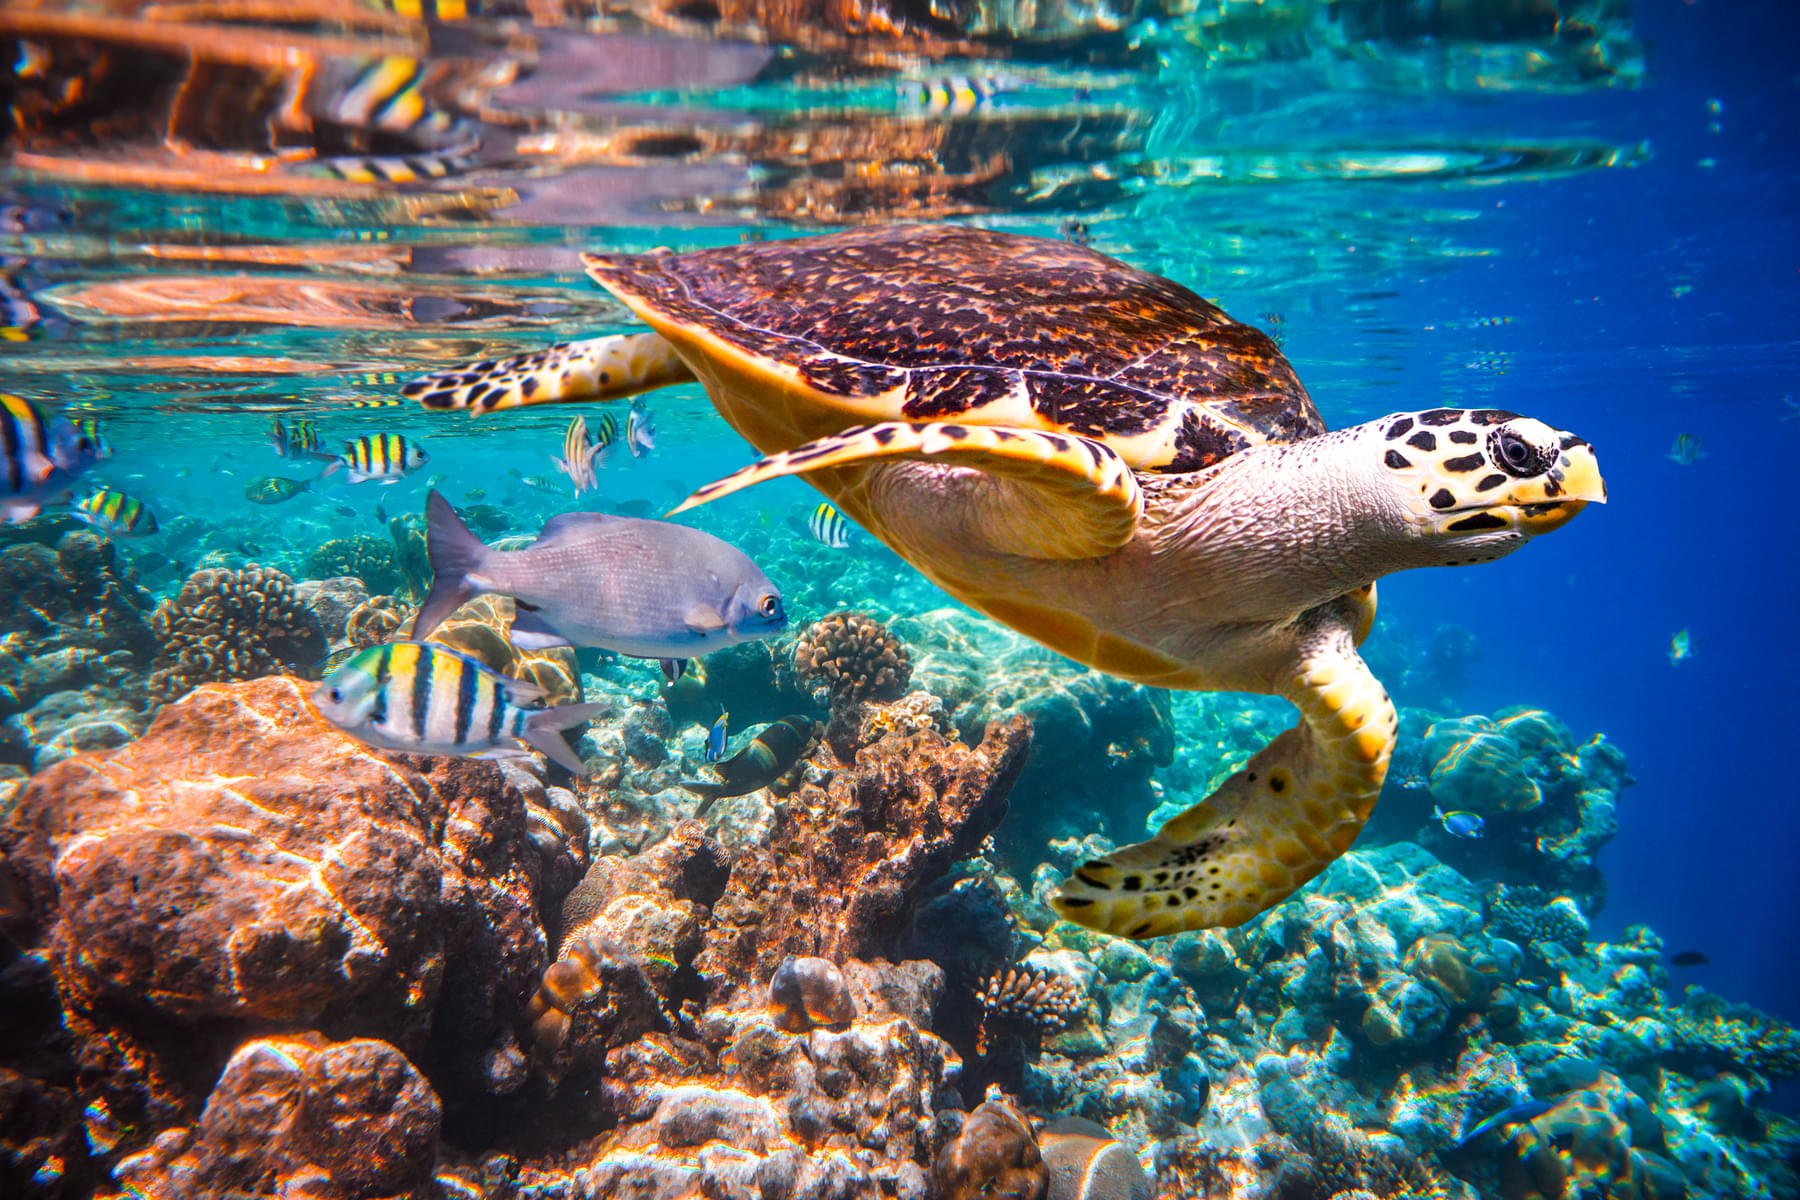 Enjoy watching more than 100,000 marine animals at SEA Aquarium Singapore